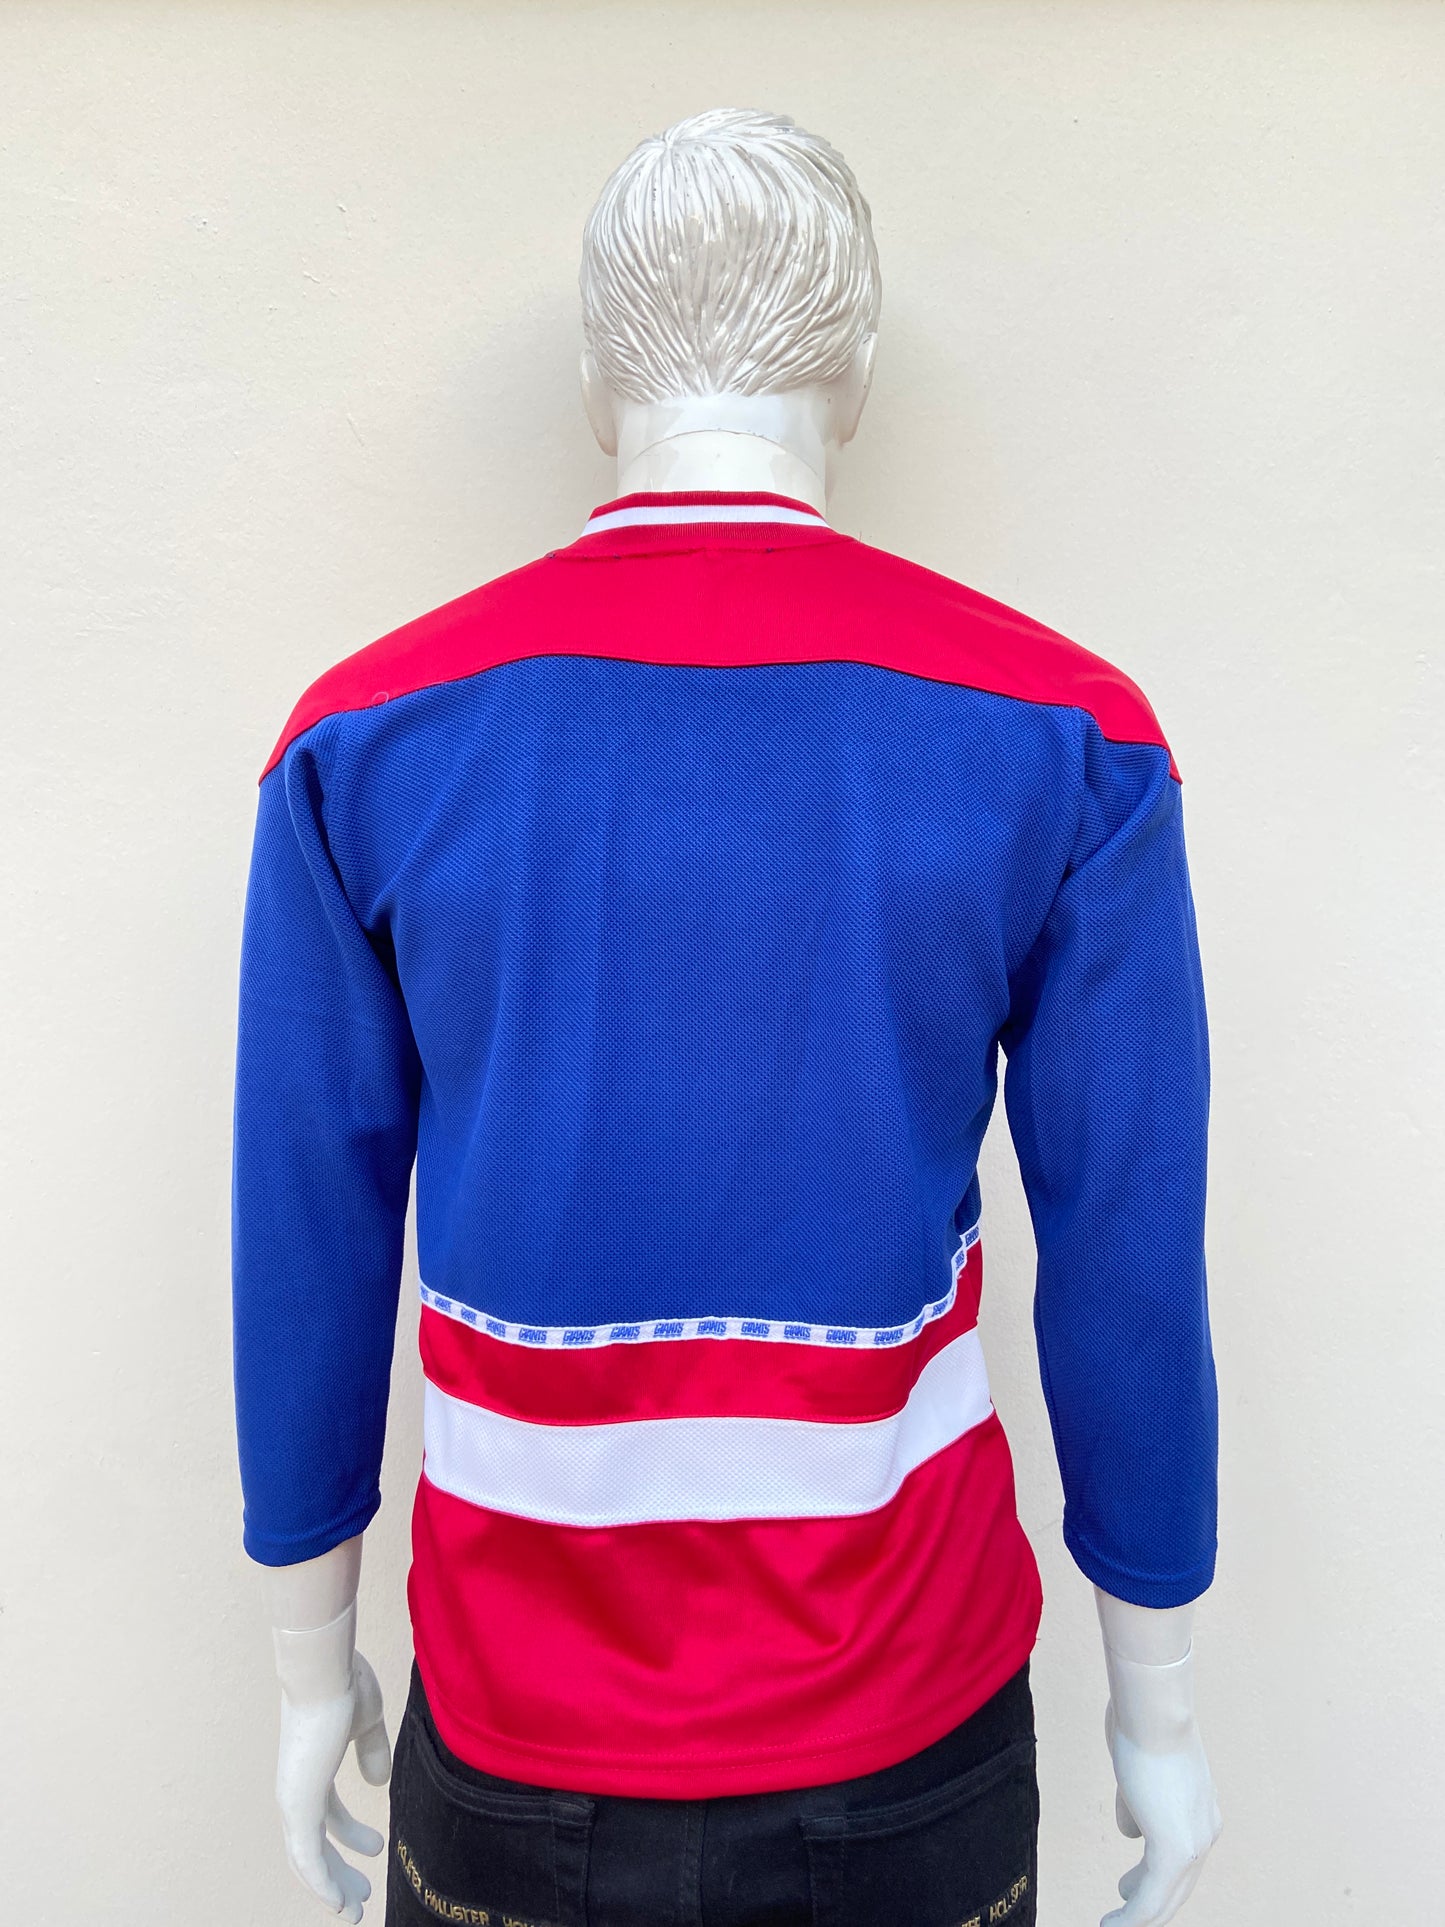 Suéter/t-shirt NFL  original azul rey con rojo y letras NY en blanco.